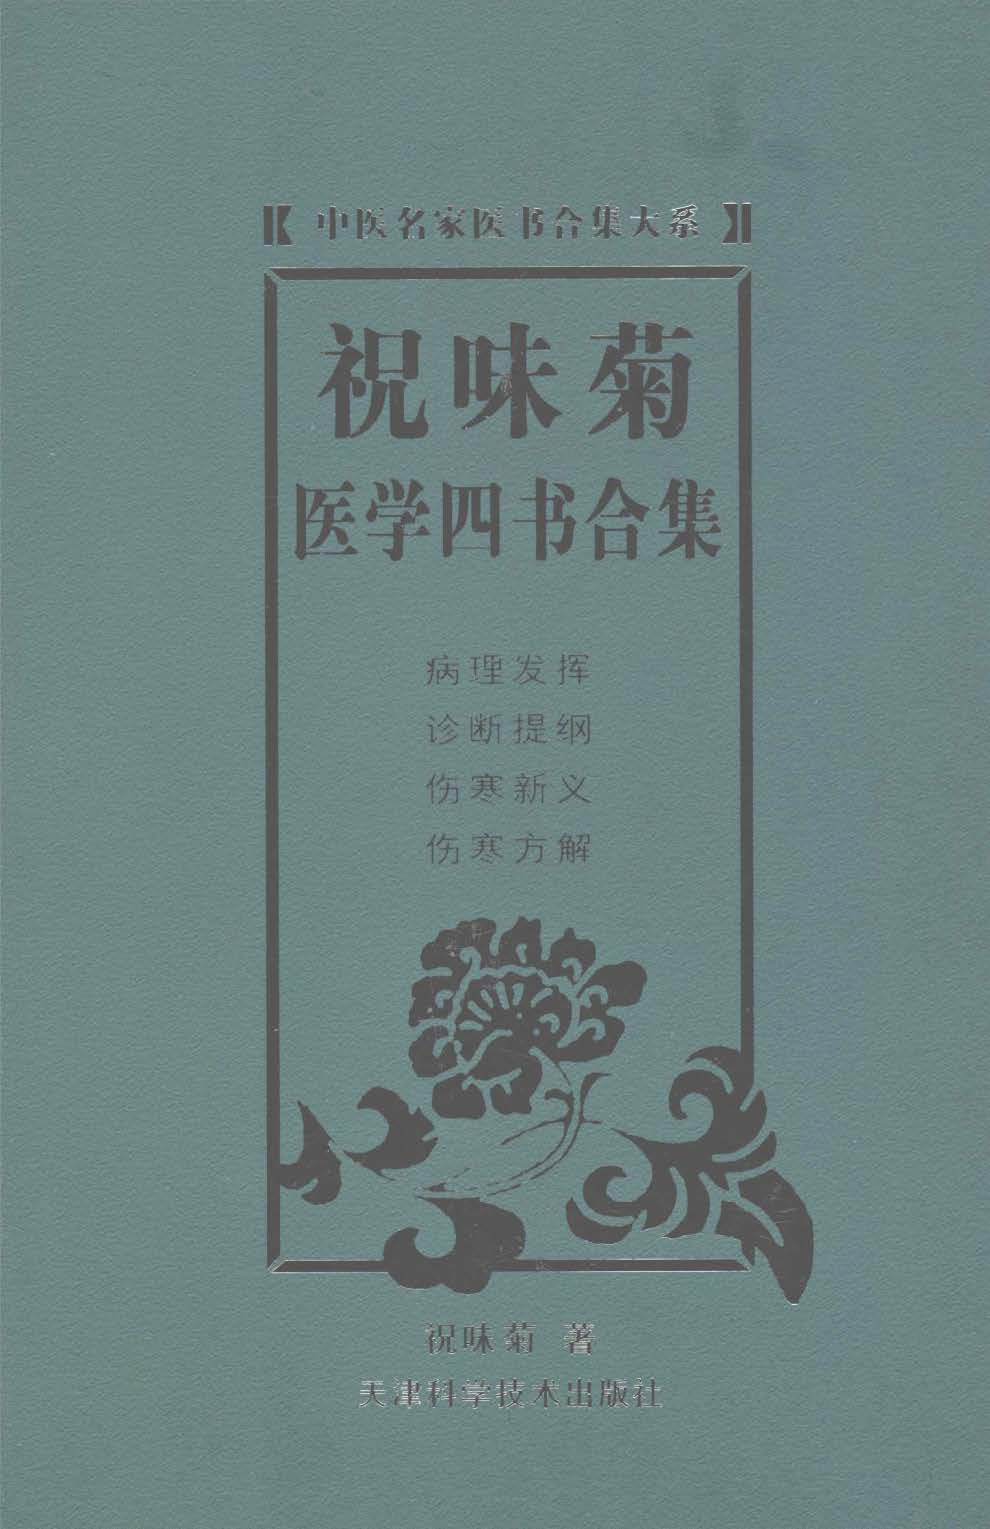 电子书- 中医名家医书合集大系(全12册) 天津科学技术出版社2009年PDF 